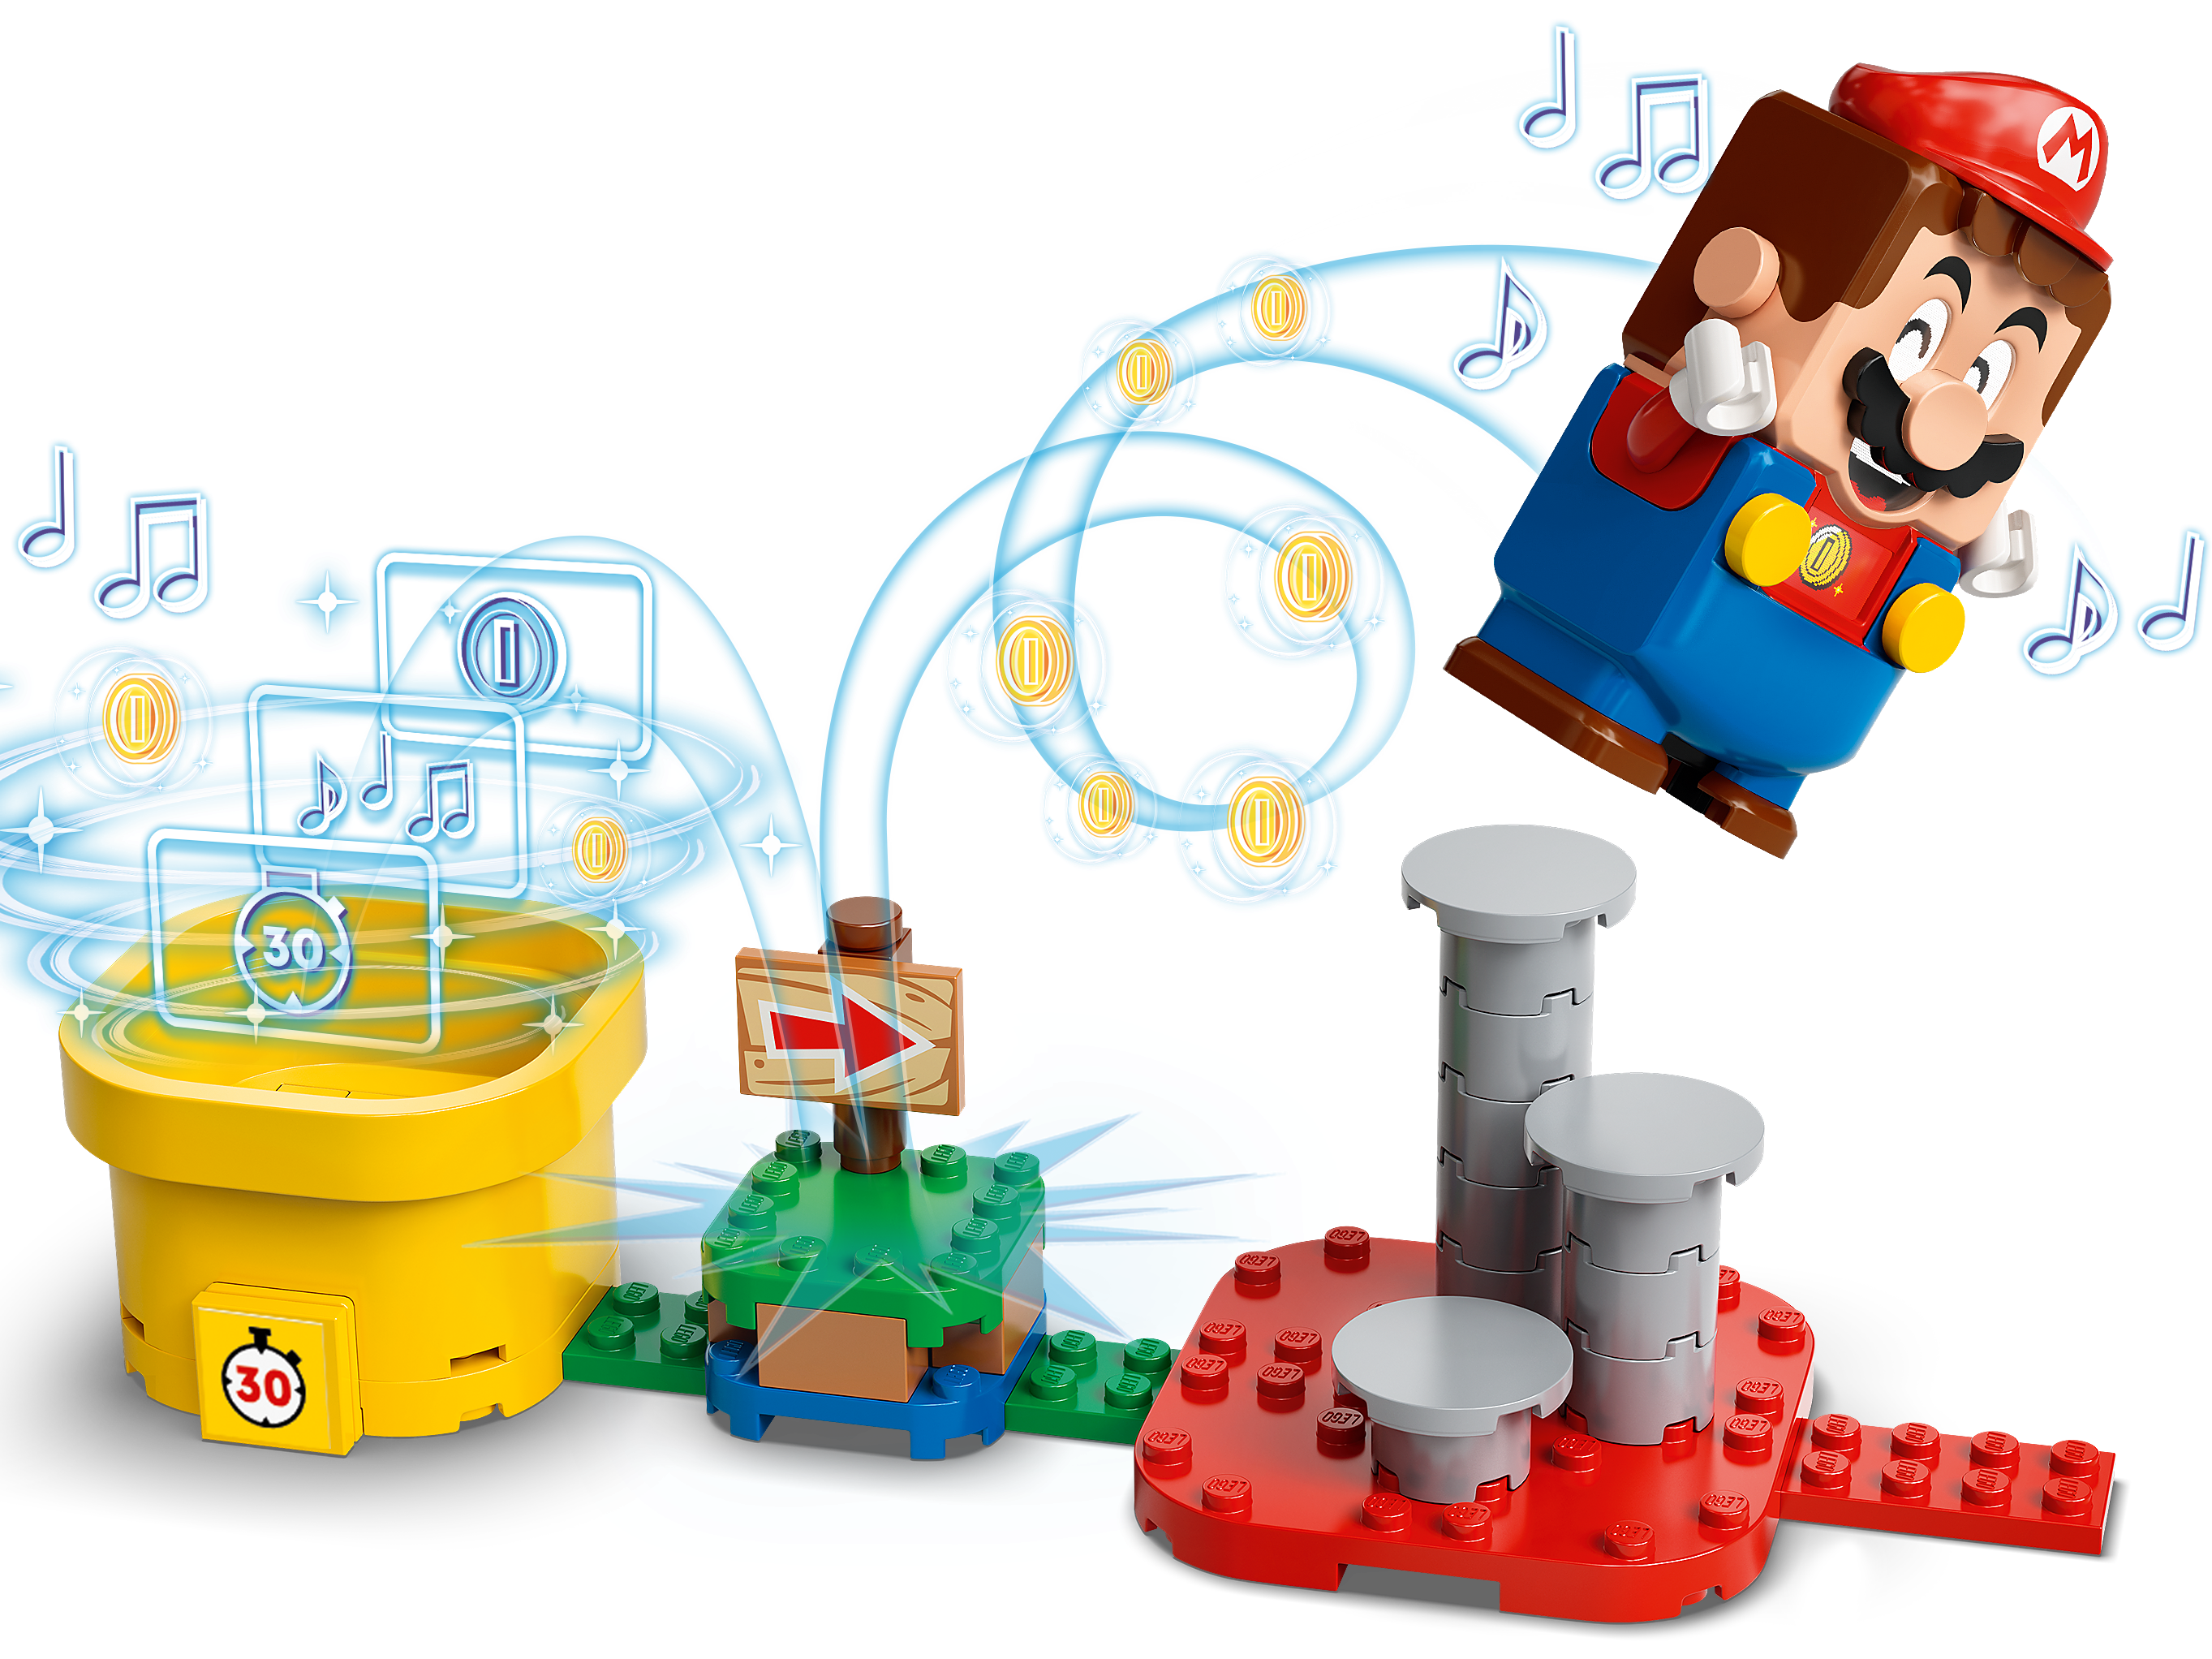 LEGO Super Mario 71380 Inventa il tuo set creatore di avventure - shoppydeals.com